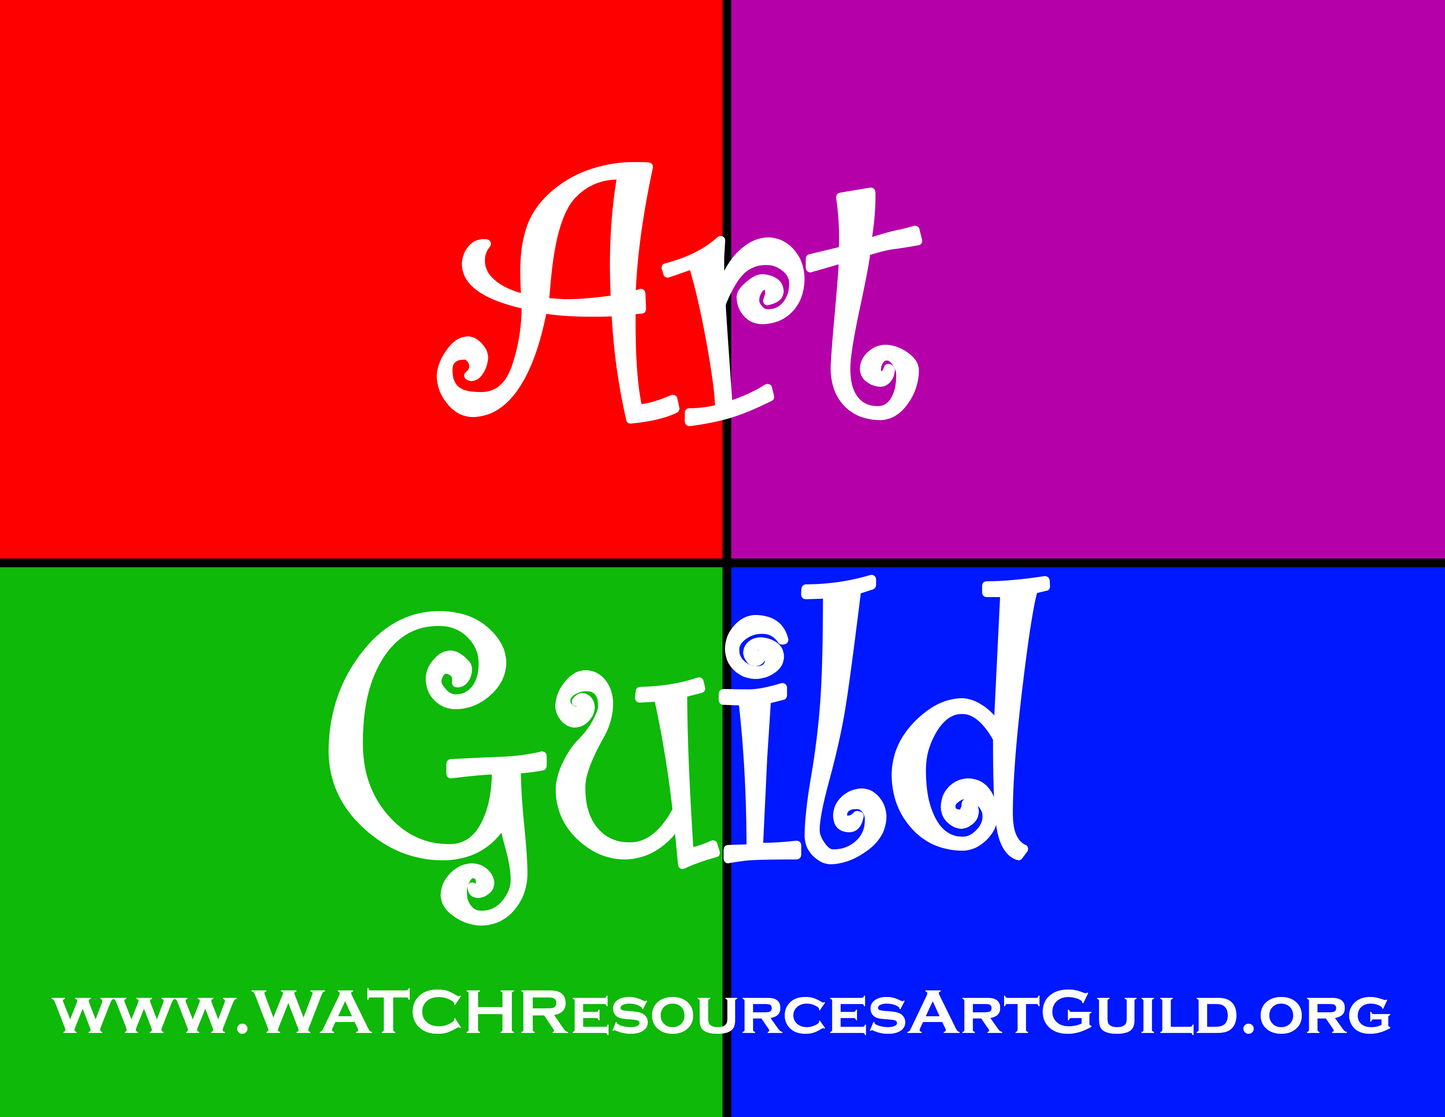 WATCH Resources Art Guild - Art Guild Donation